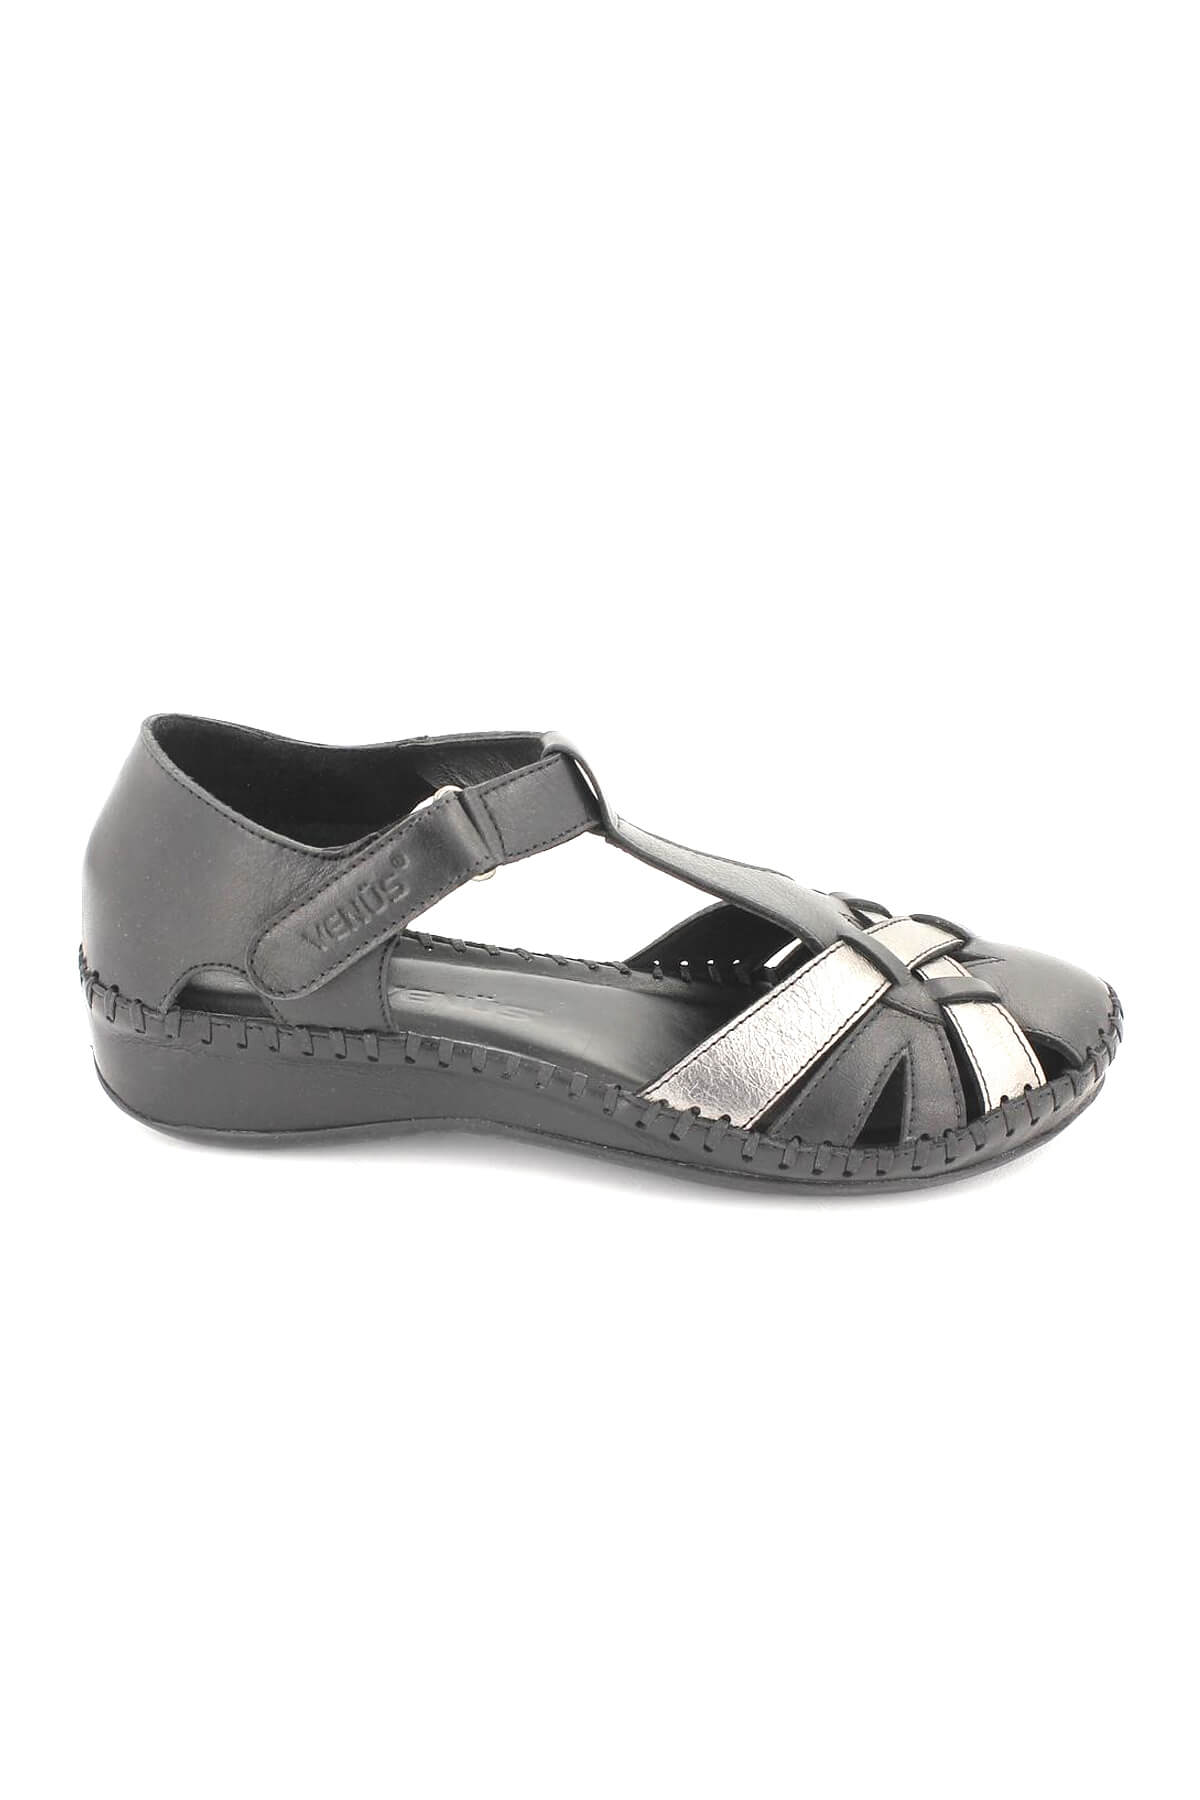 Kadın Comfort Deri Ayakkabı Siyah 18793008